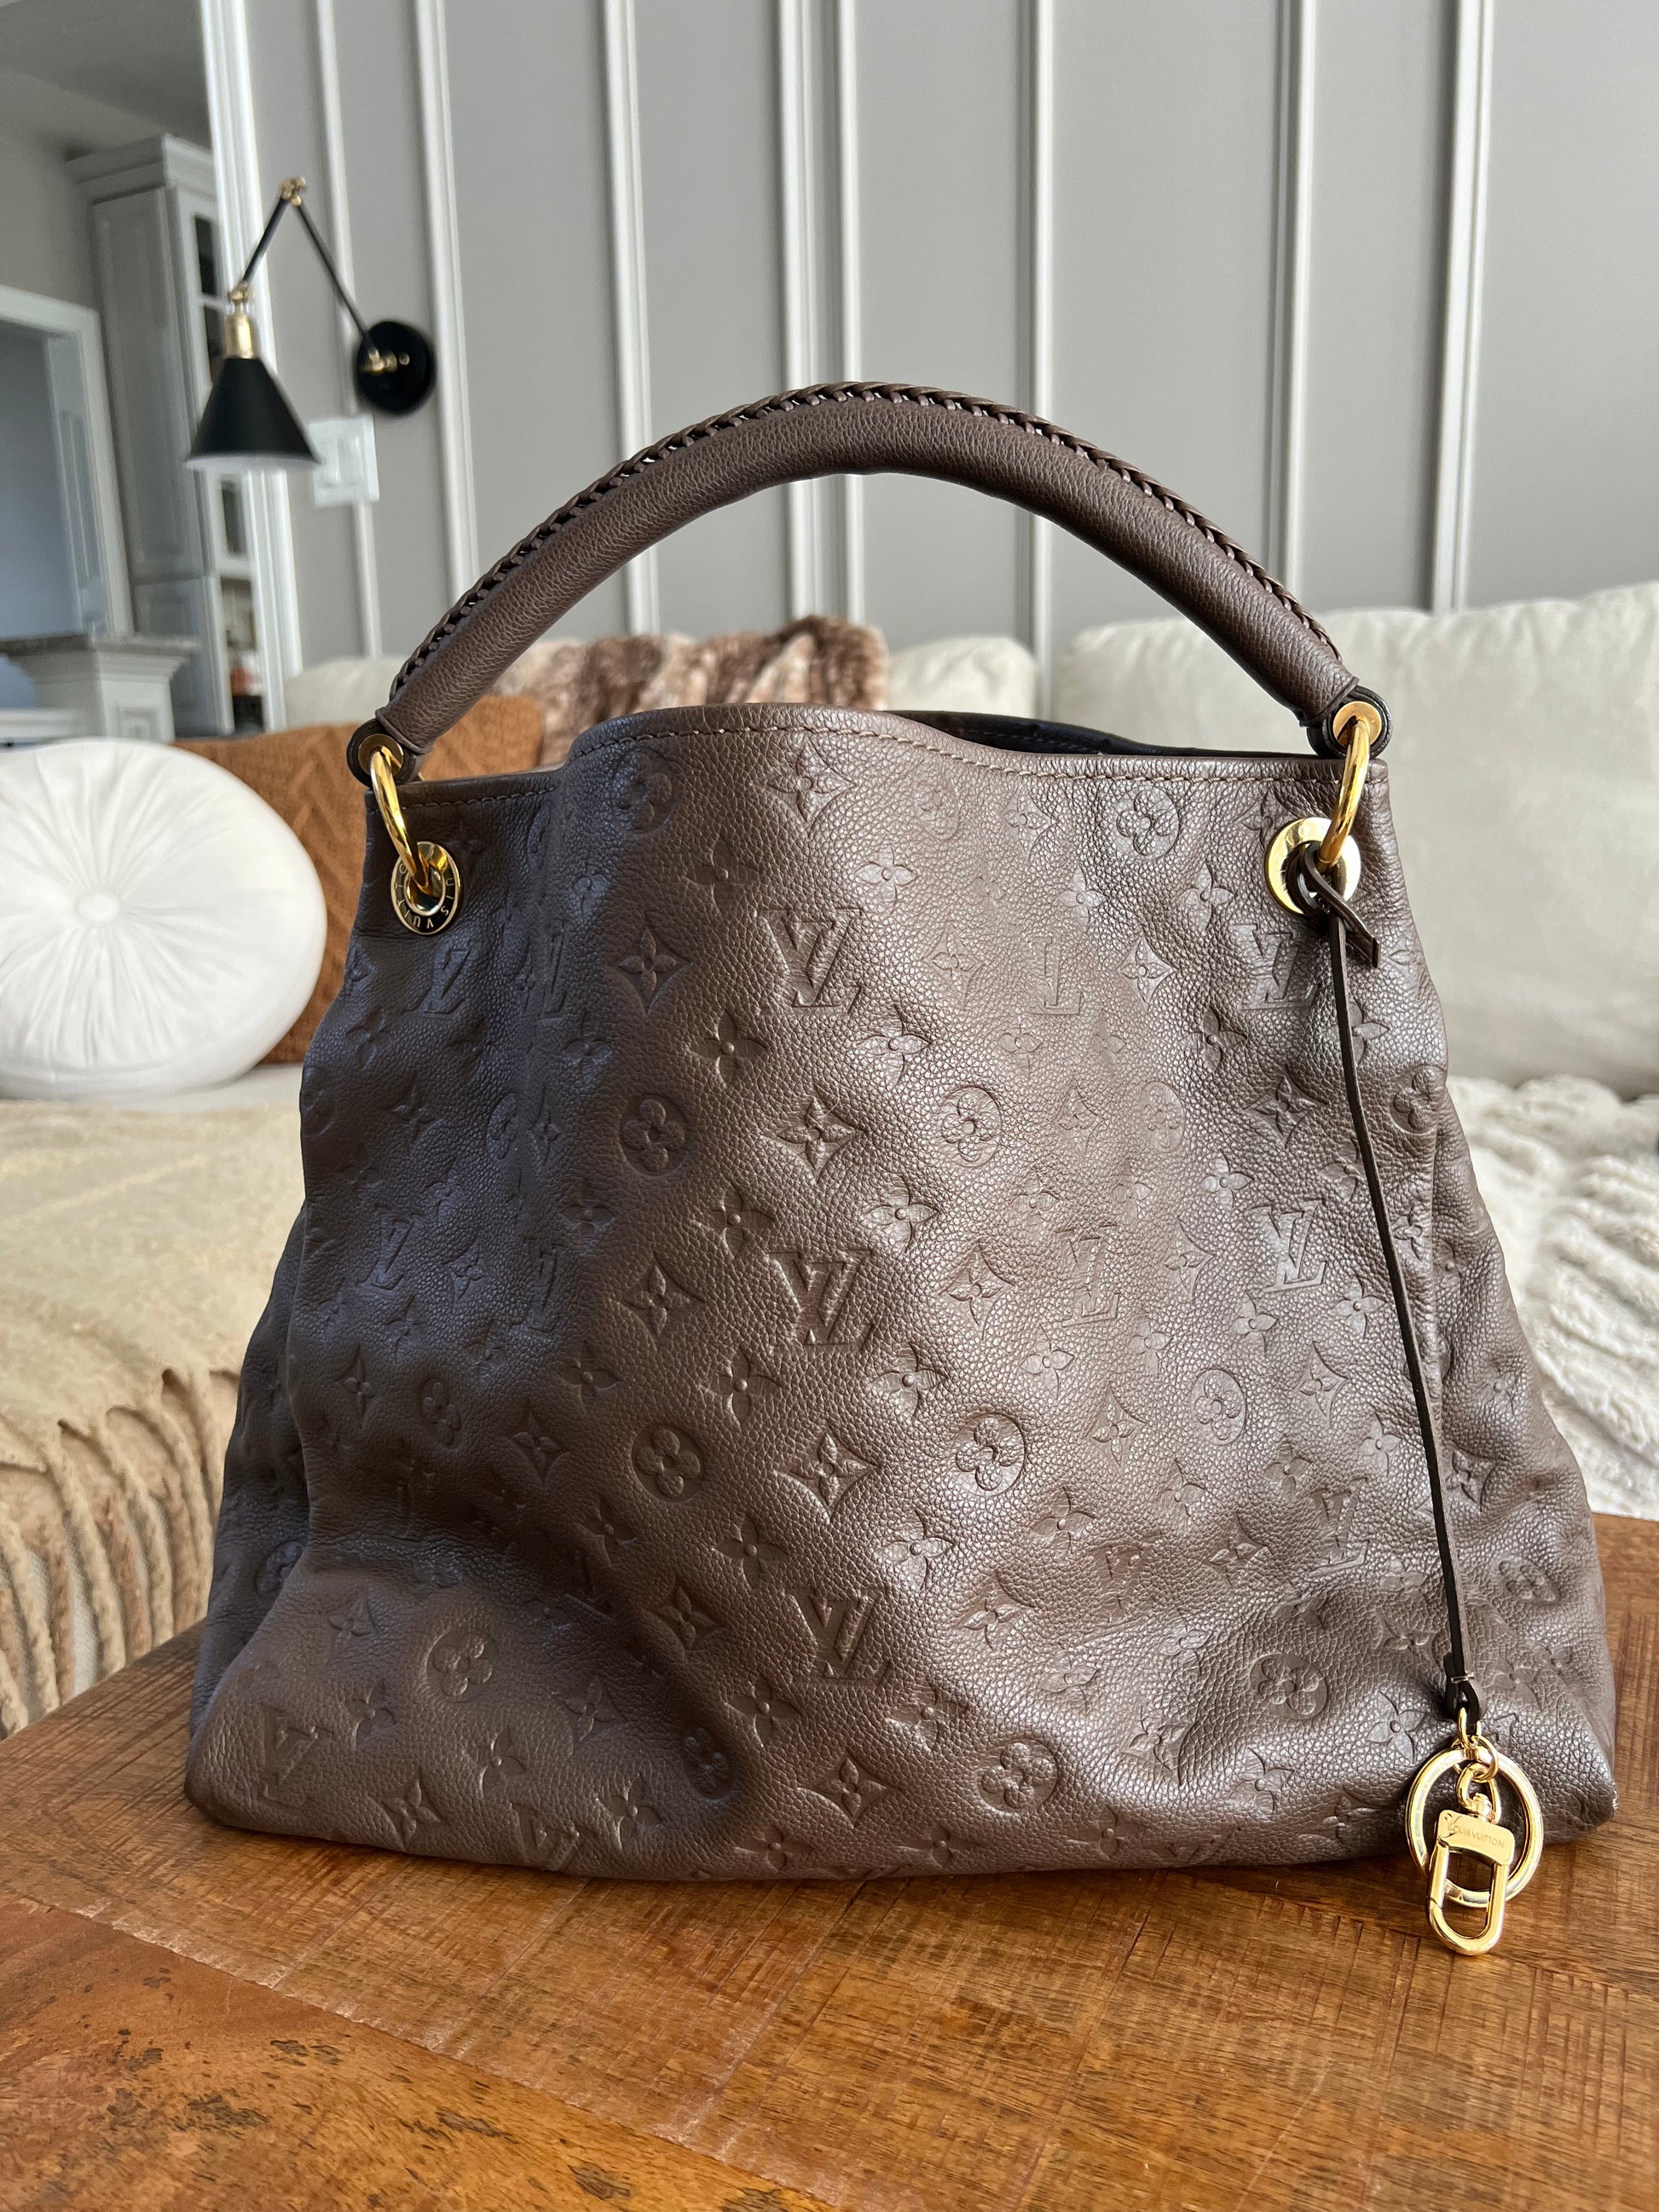 Louis Vuitton Artsy Shopping Bag in Dark Brown Empreinte Monogram